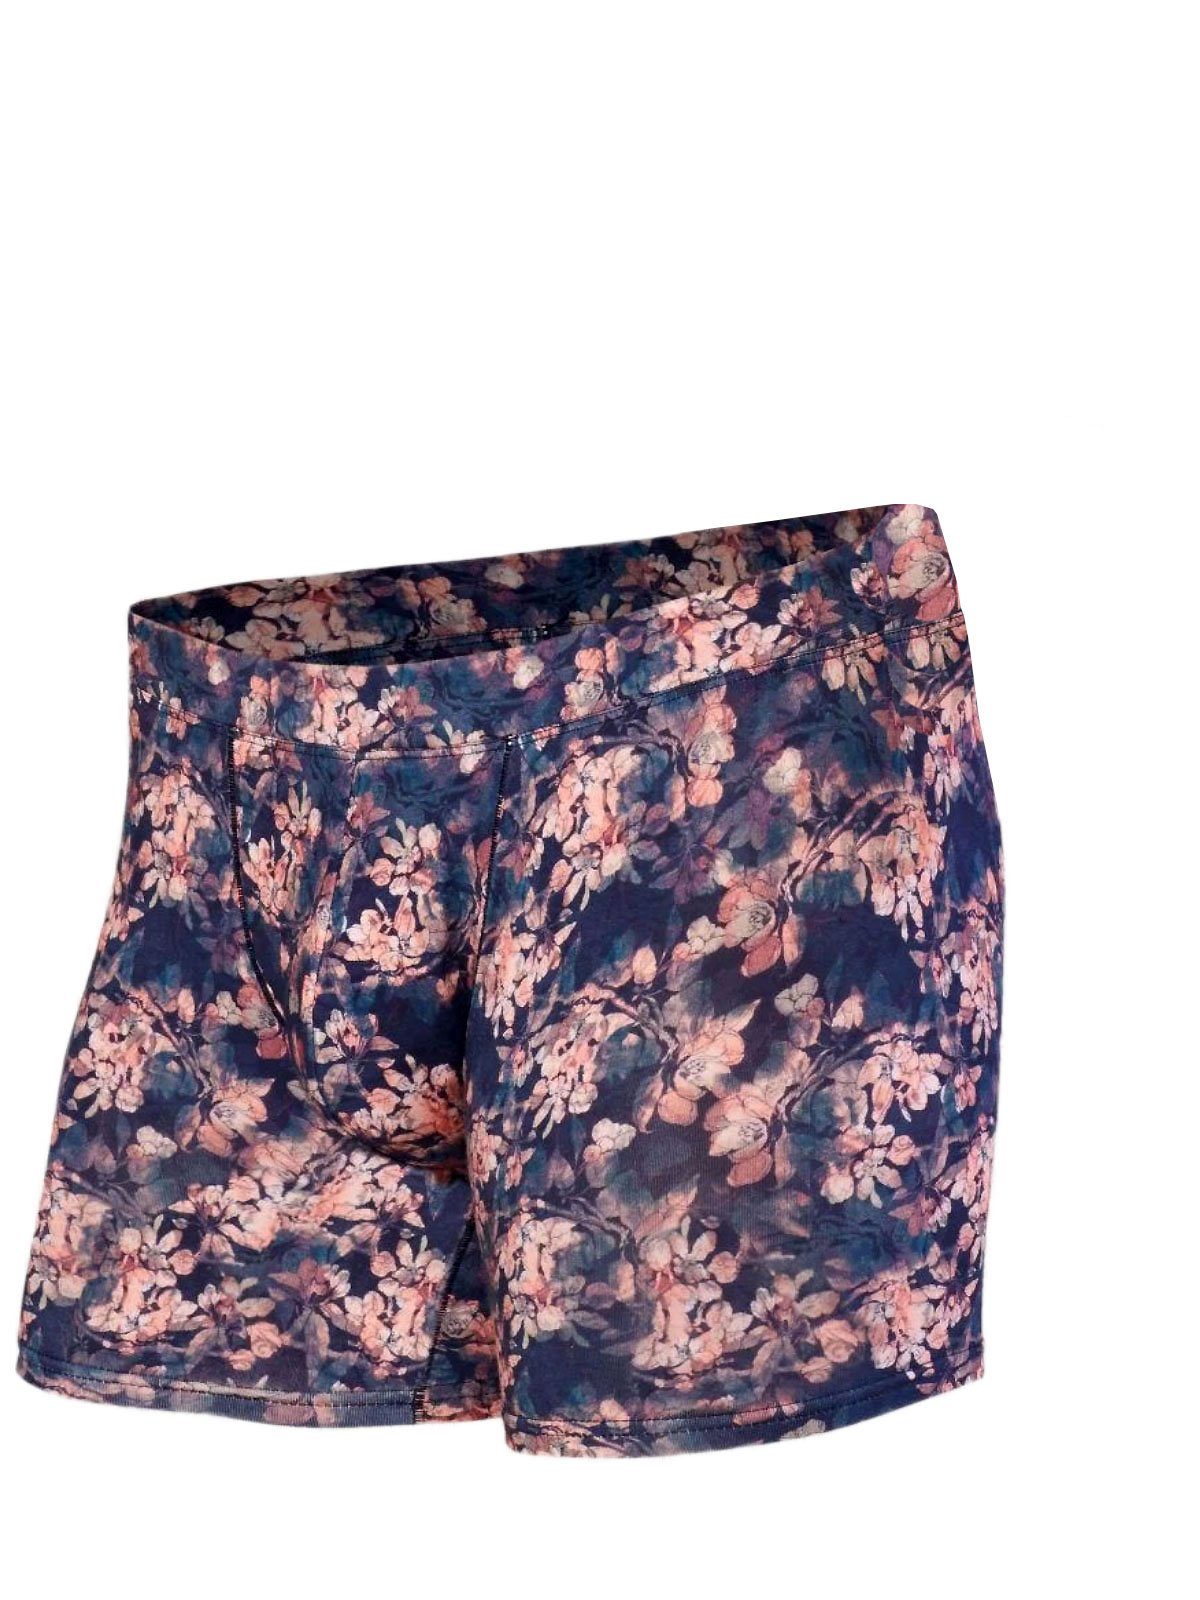 Doreanse Imprime DA1856 M, Herren Pants Underwear Boxershorts Hipster Wild Flower,